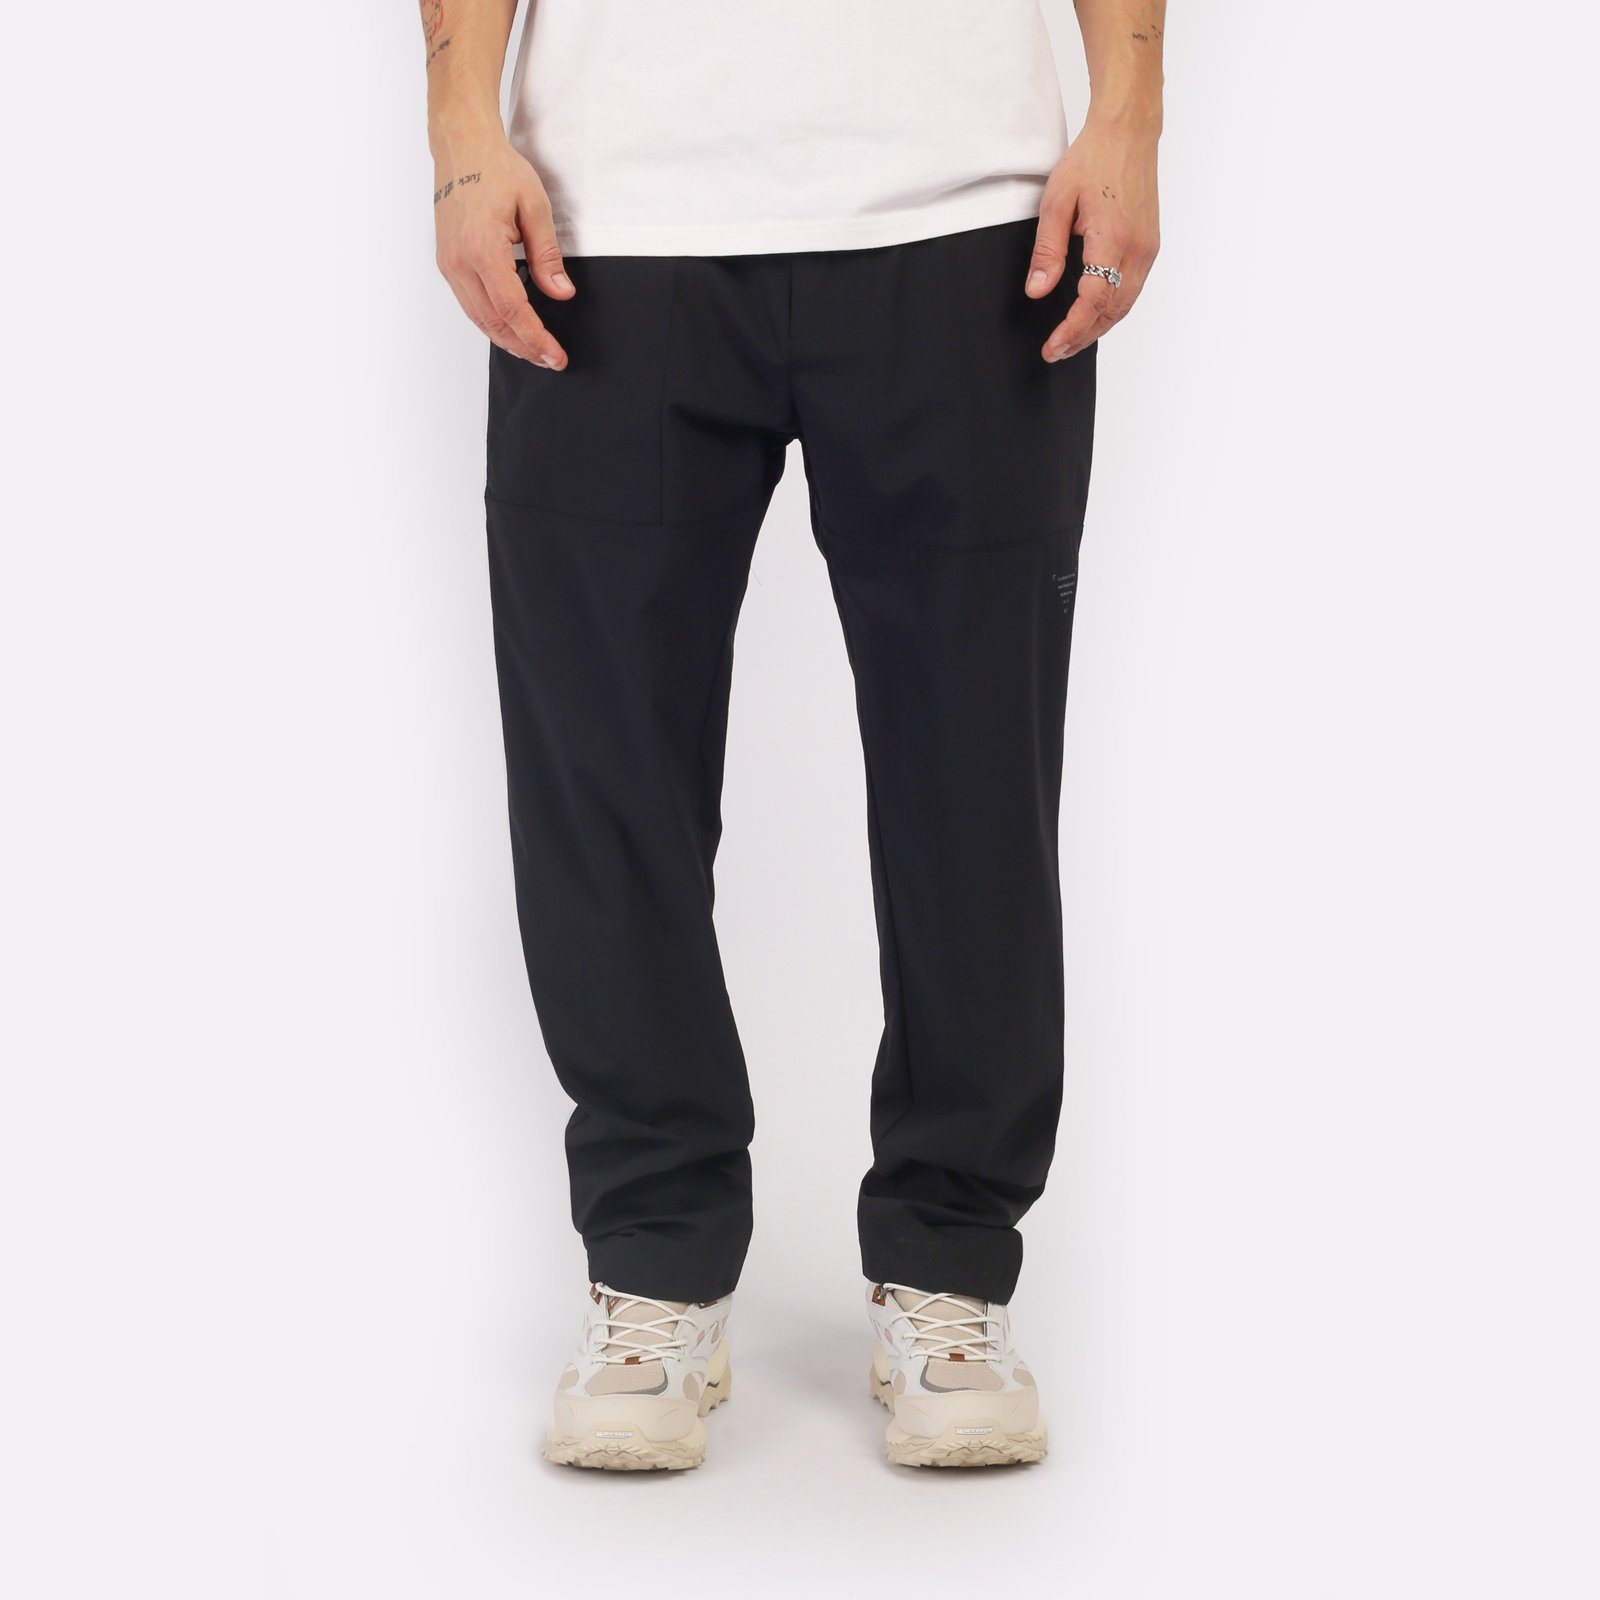 мужские черные брюки KRAKATAU Rm180-1 Rm180-1-чёрный - цена, описание, фото 1